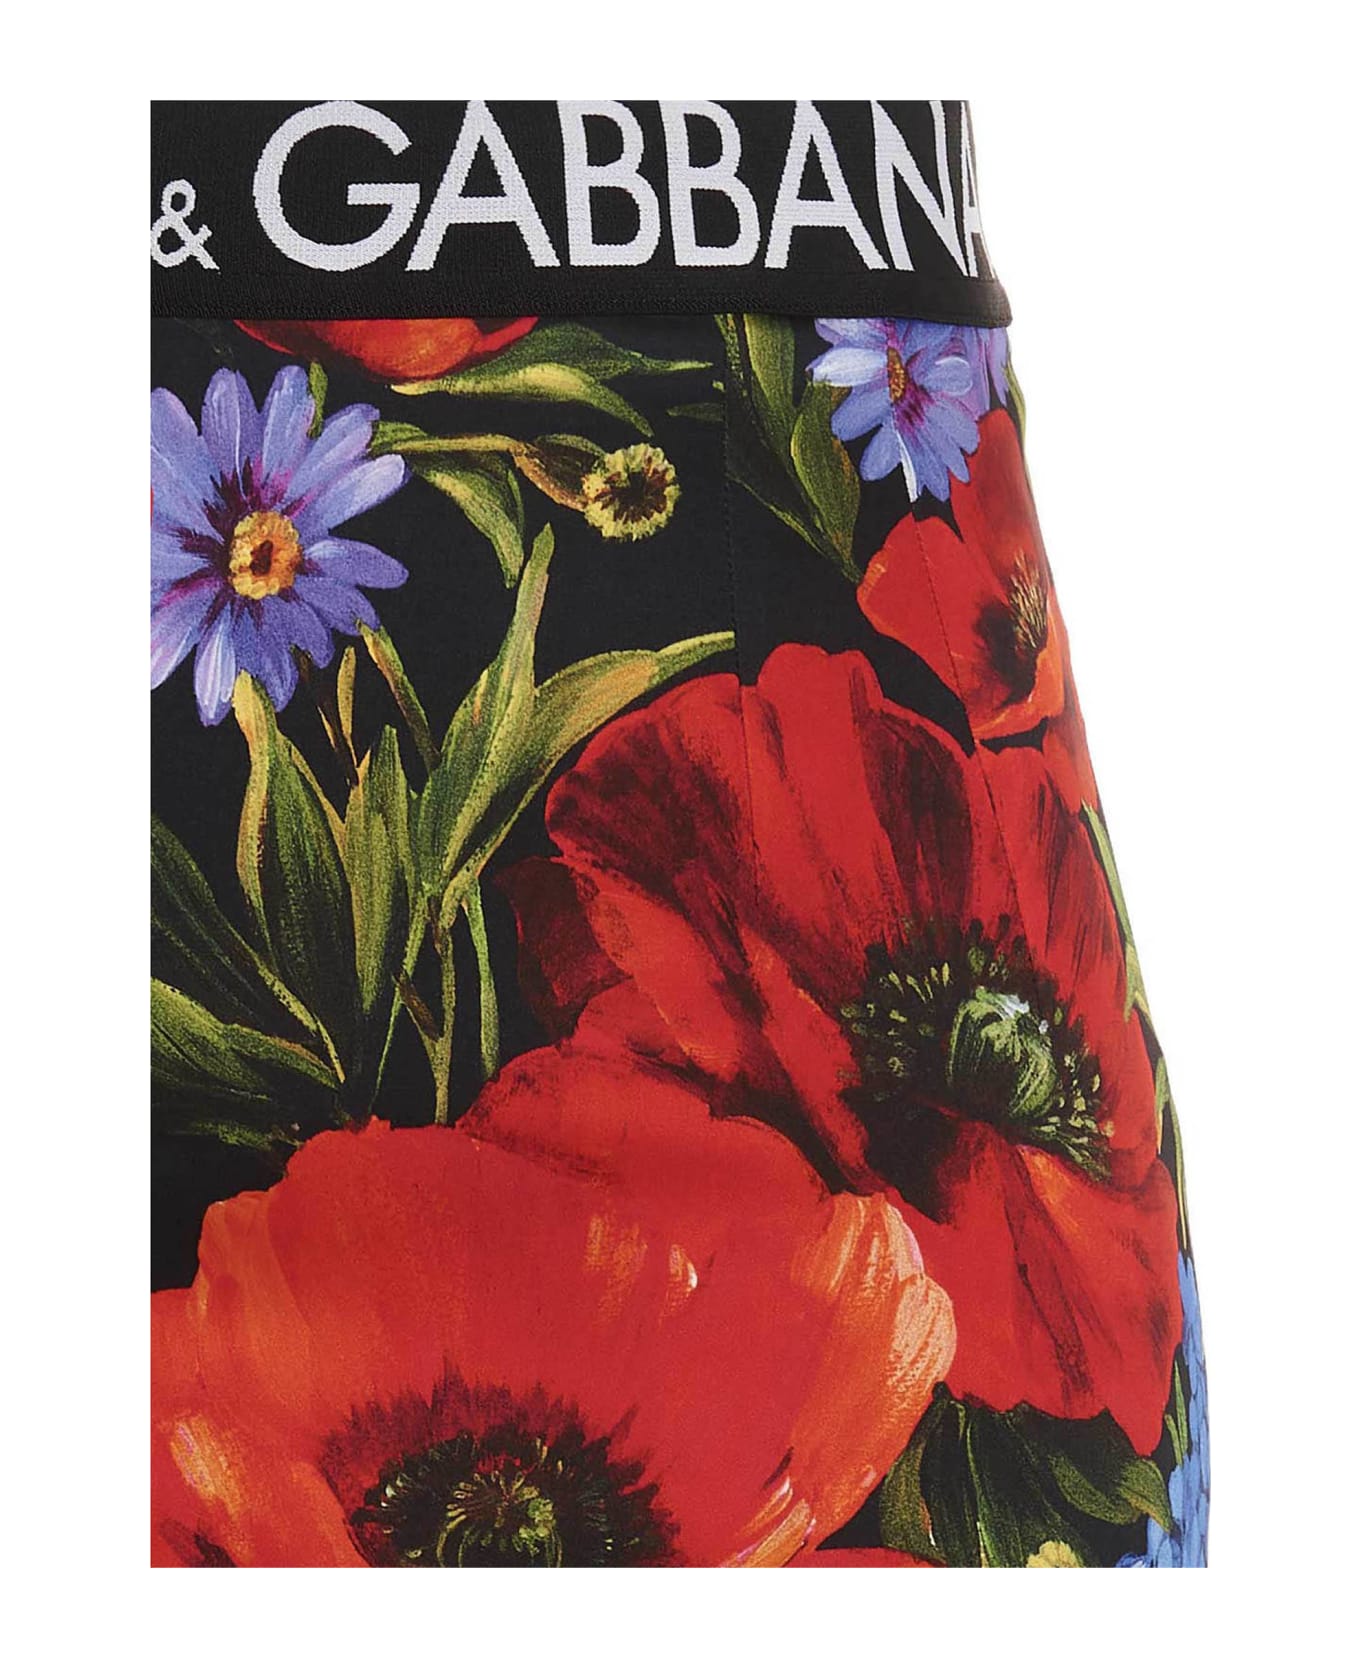 Dolce & Gabbana 'prato Fiorito' Maxi Skirt - Multicolor